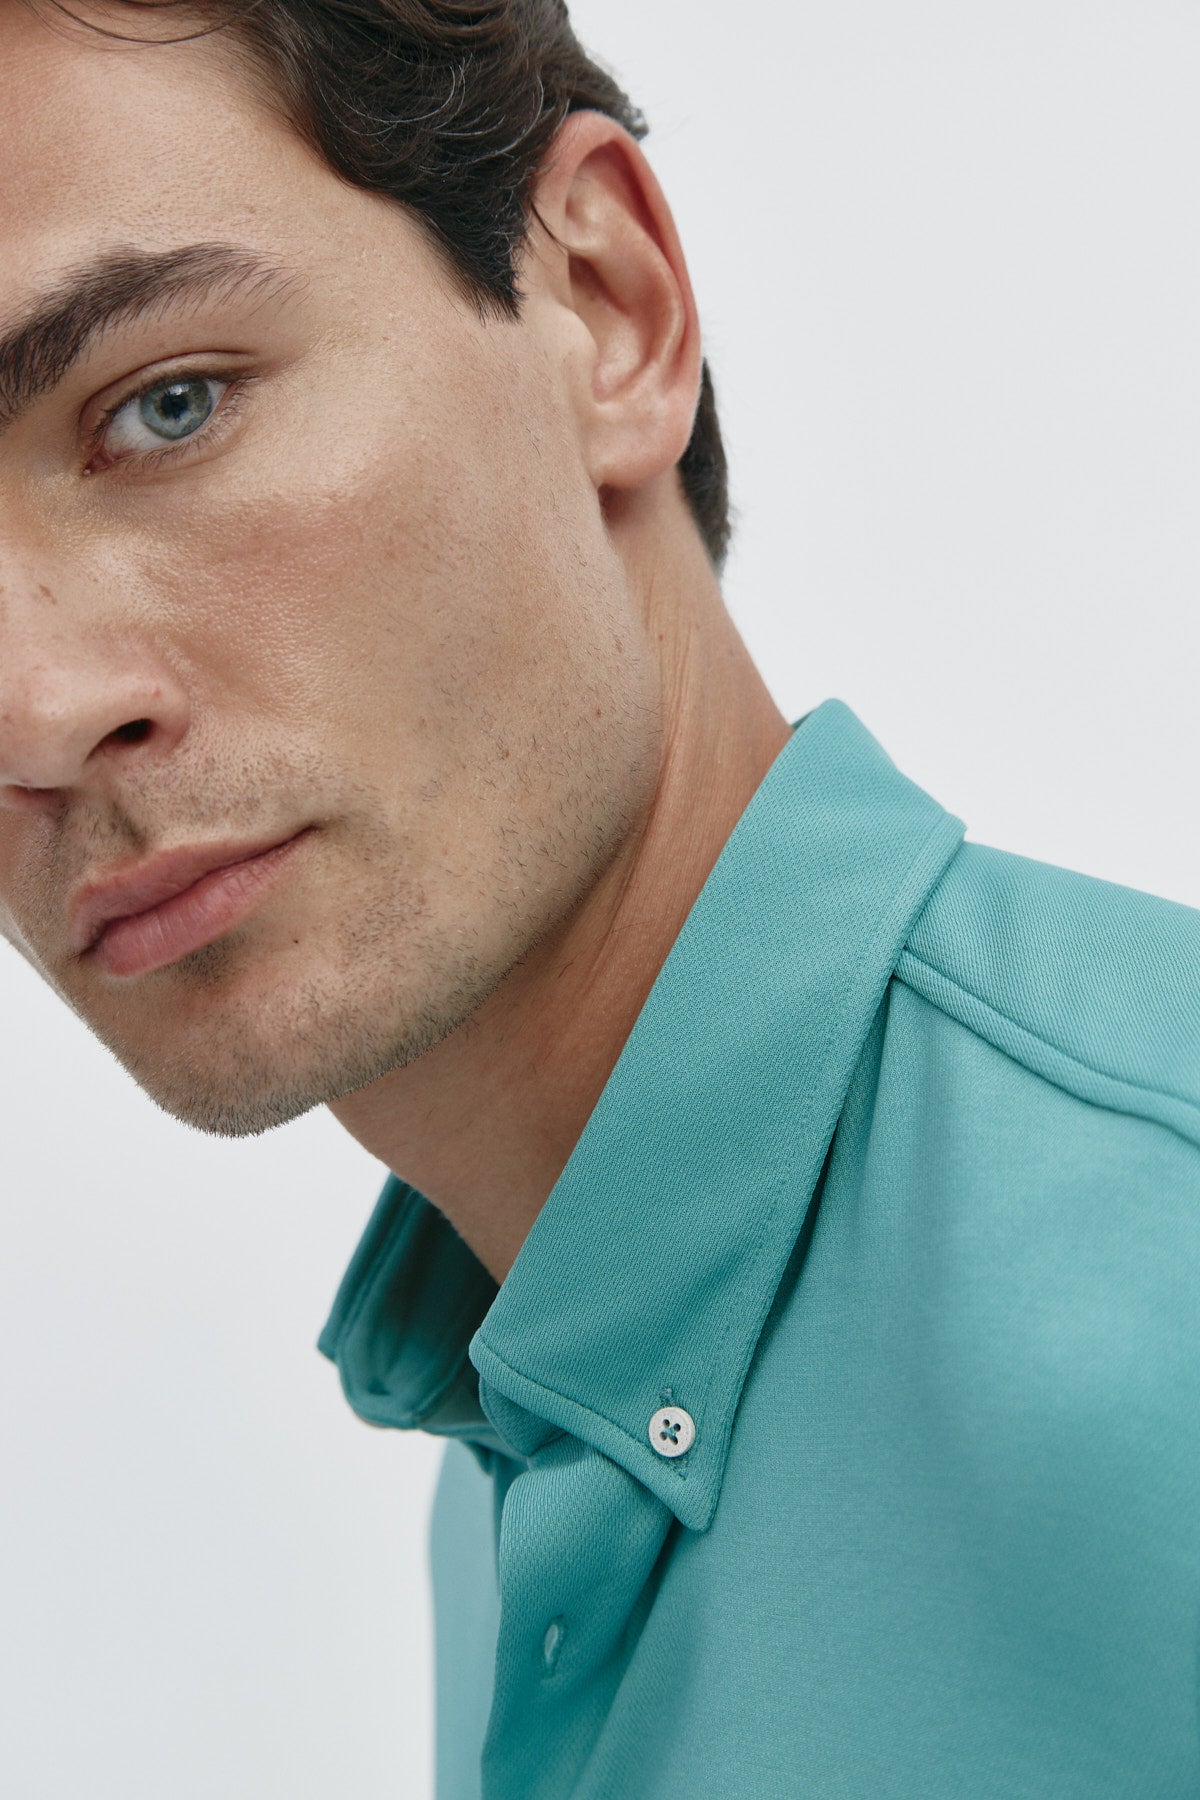 Camisa casual de hombre verde clorofila regular de Sepiia, estilo y versatilidad en una prenda duradera. Foto retrato